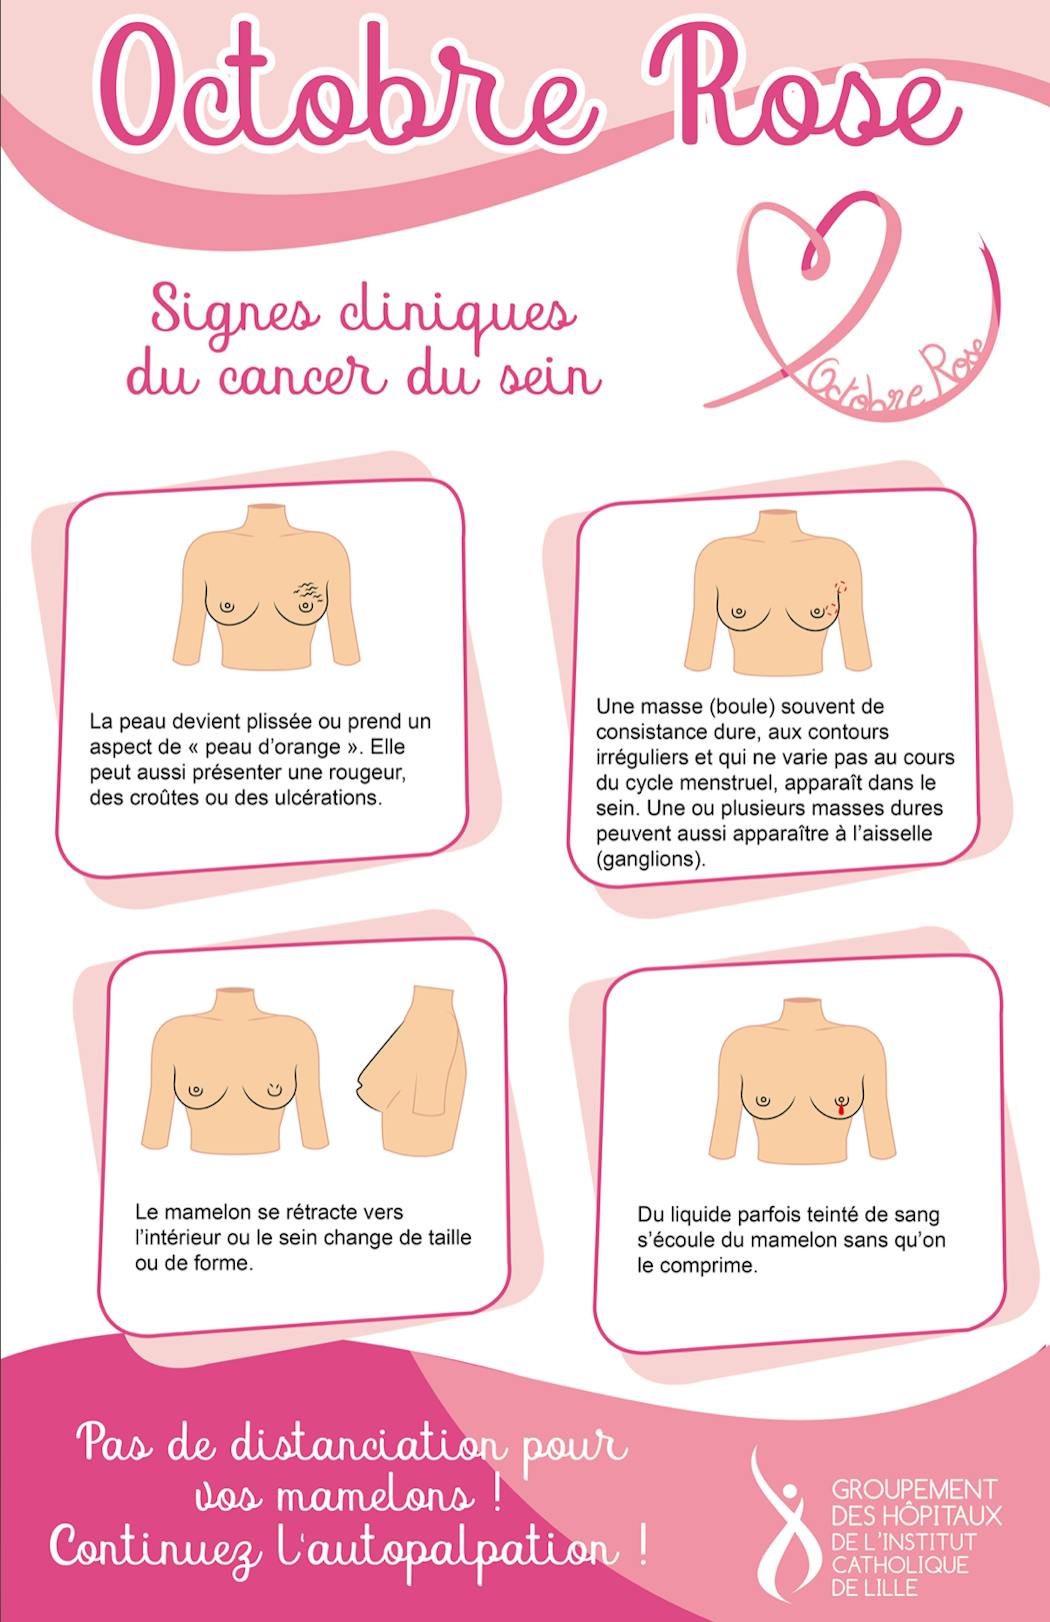 Pour prévenir le cancer du sein, apprenez à palper votre poitrine